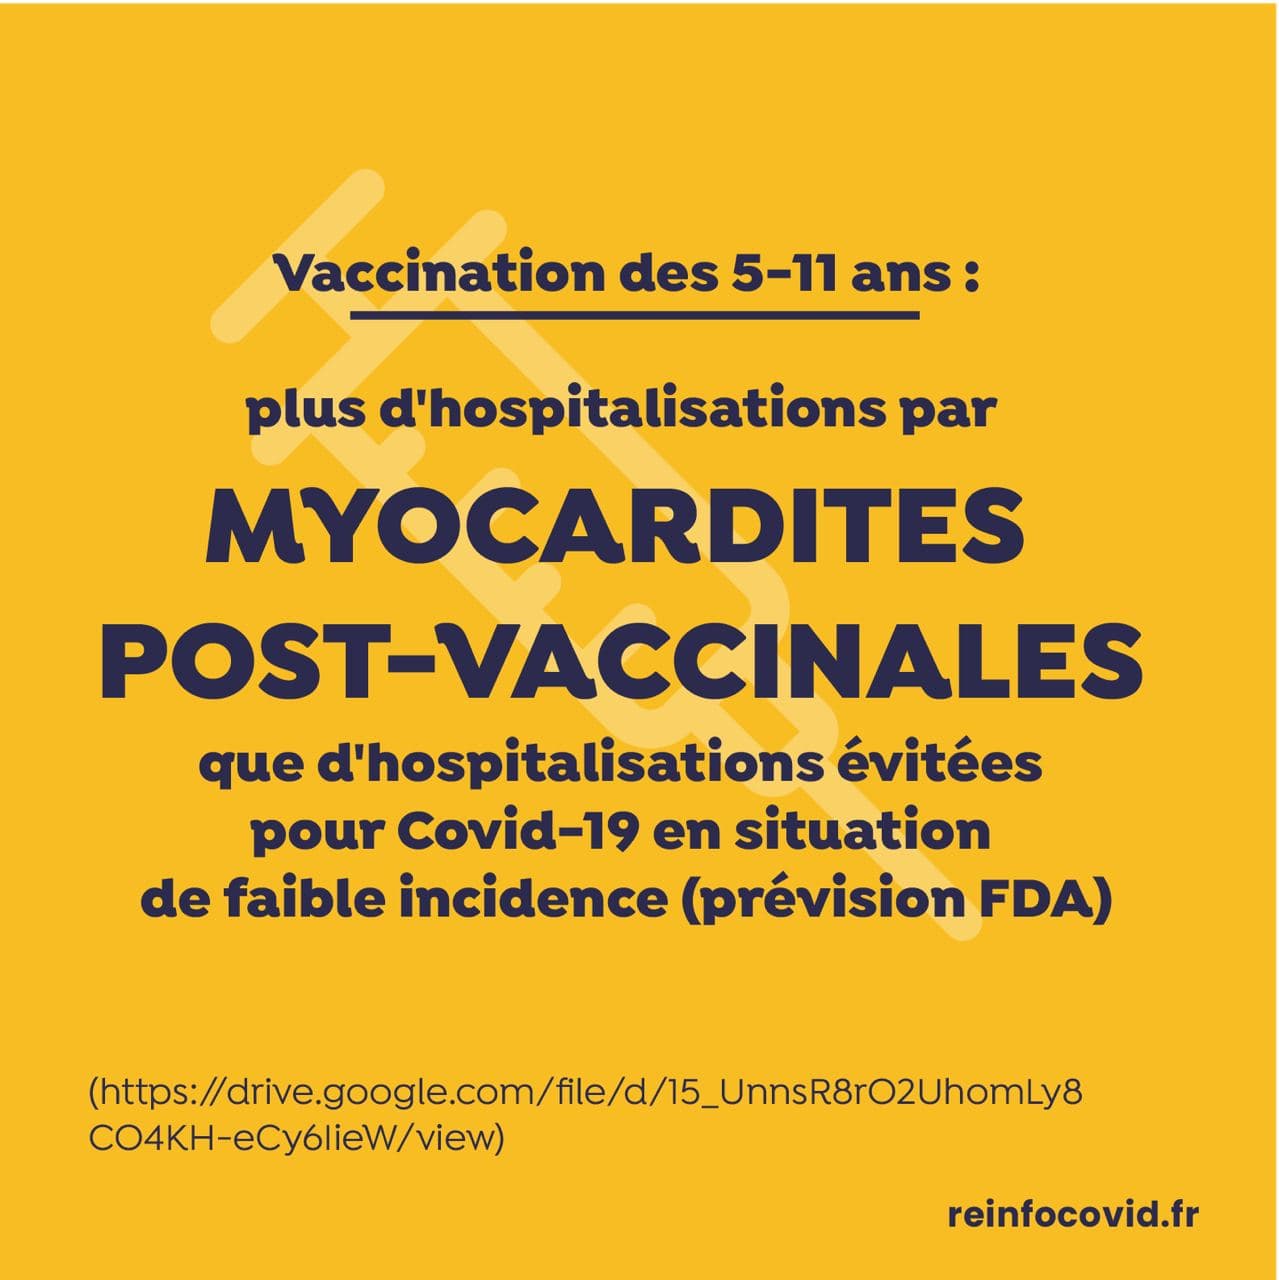 myocardites post-vaccinales